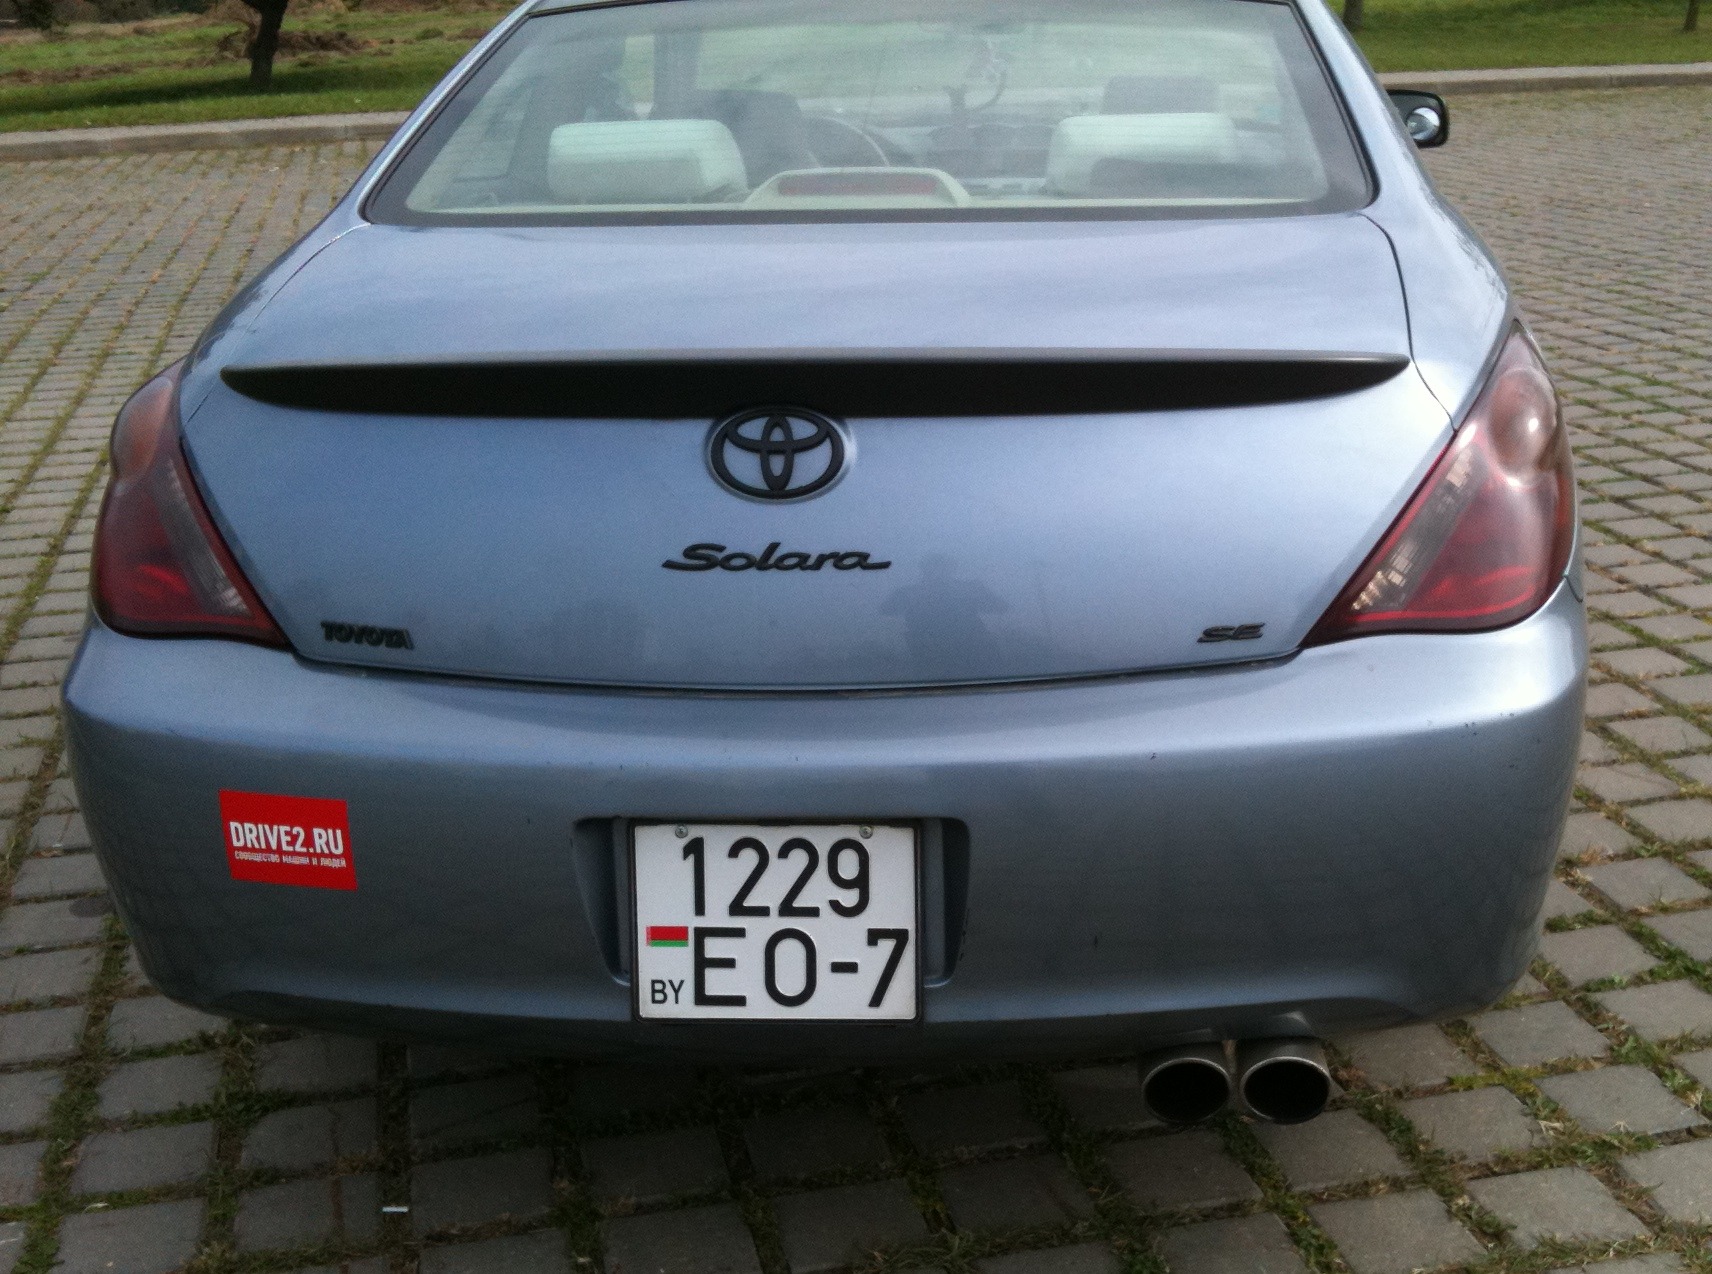      Toyota Solara 24 2004